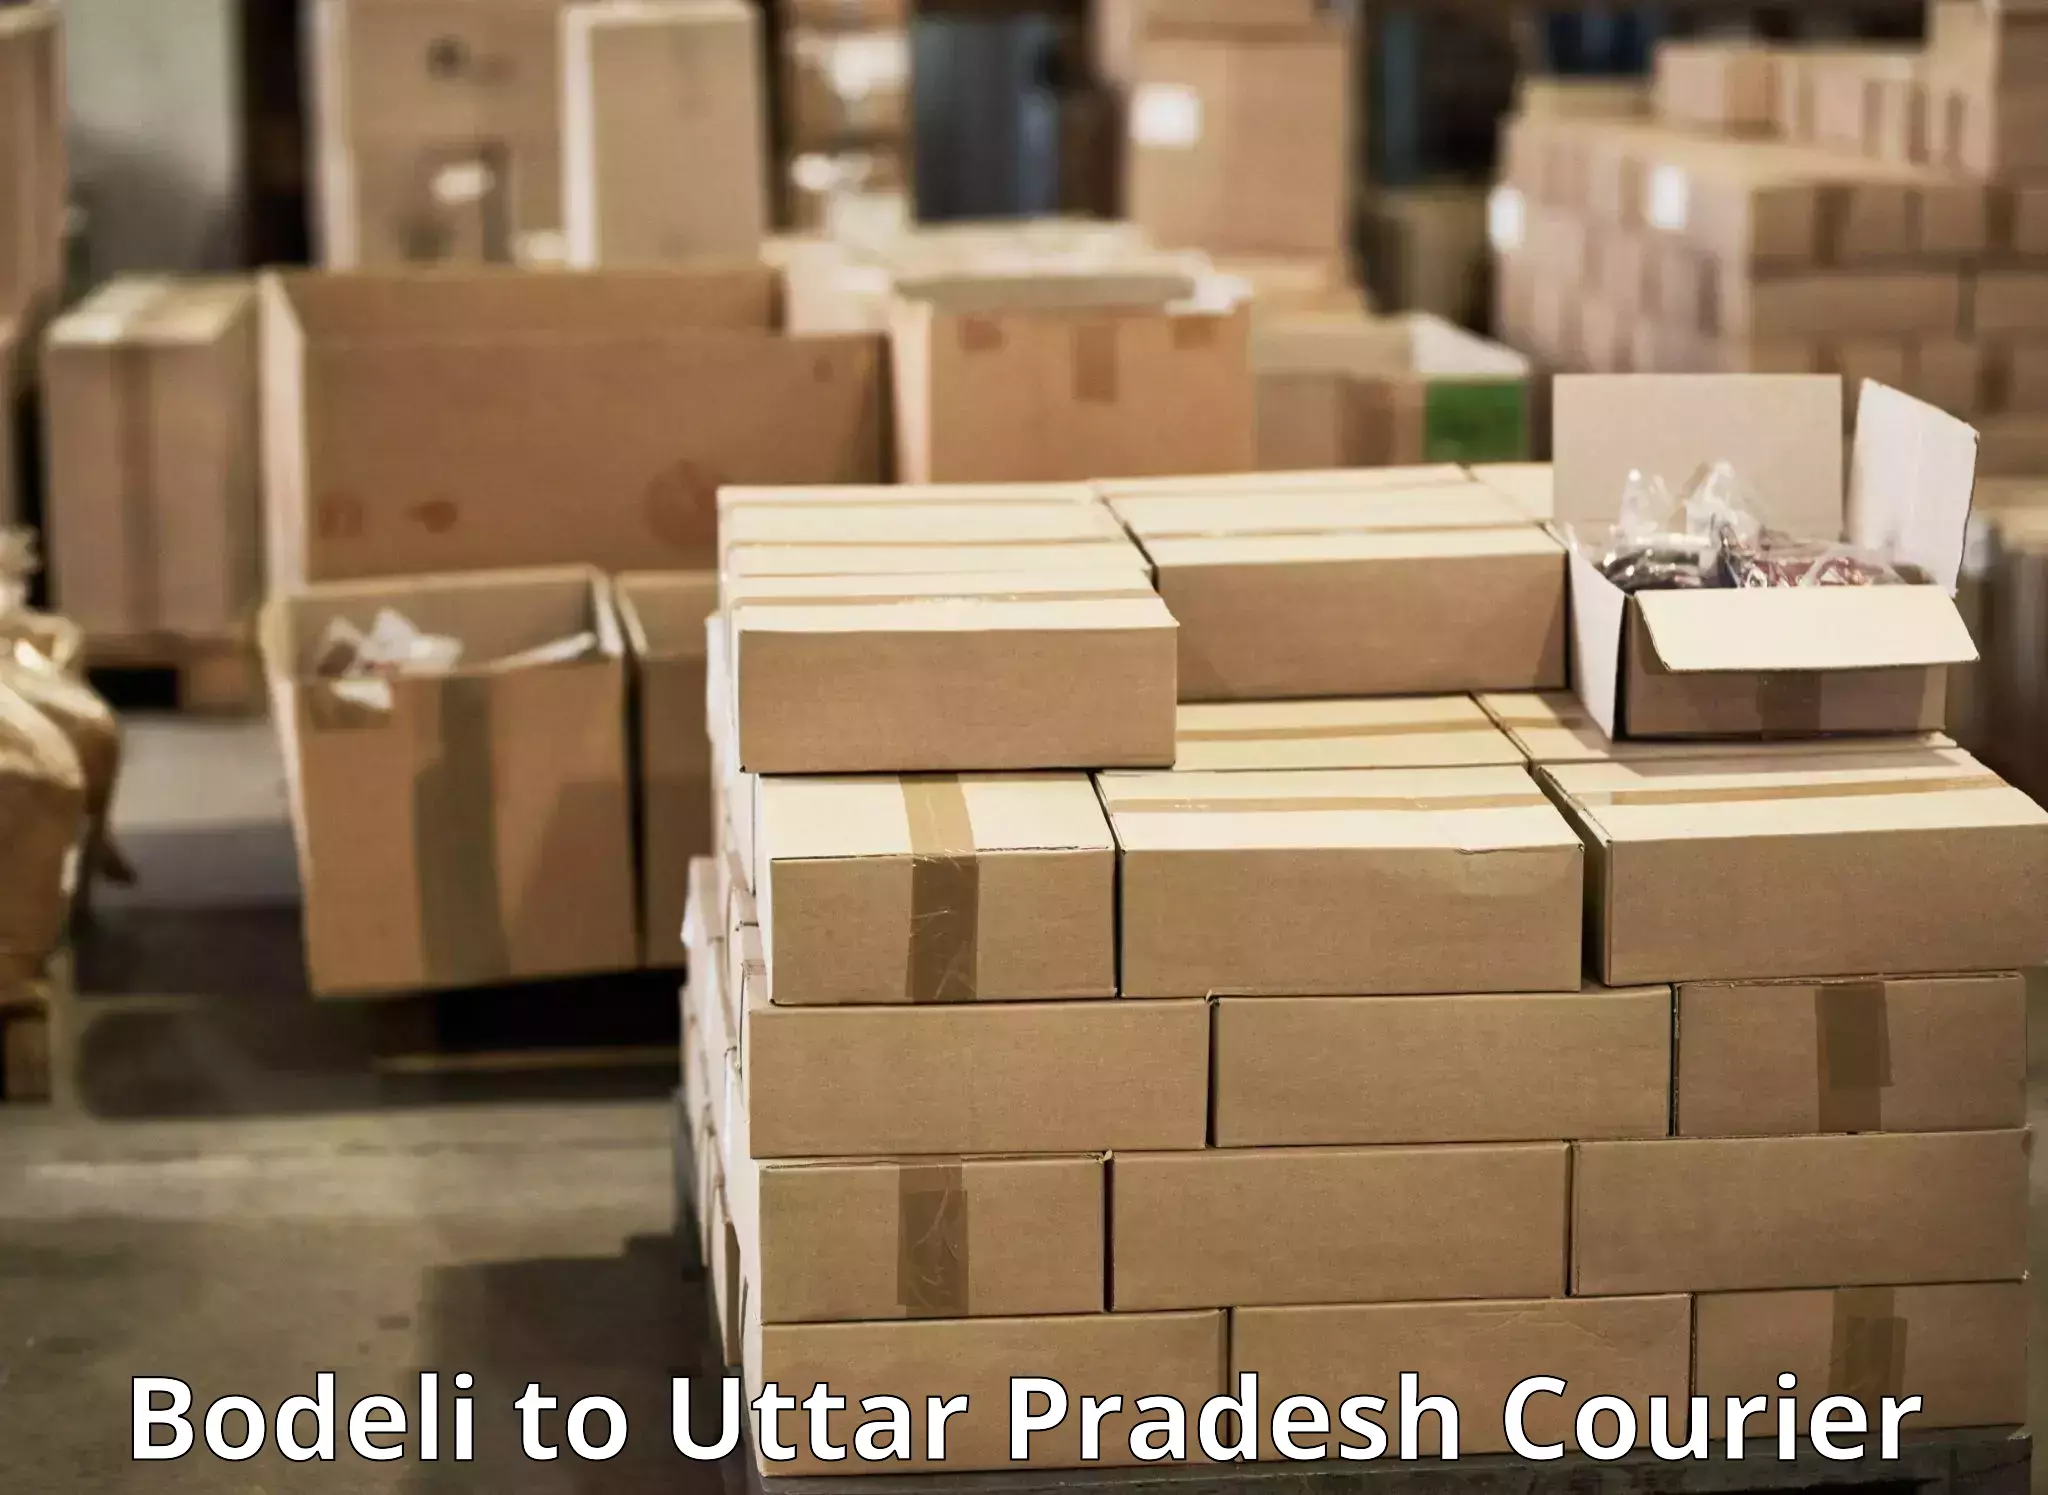 Package forwarding in Bodeli to Akbarpur